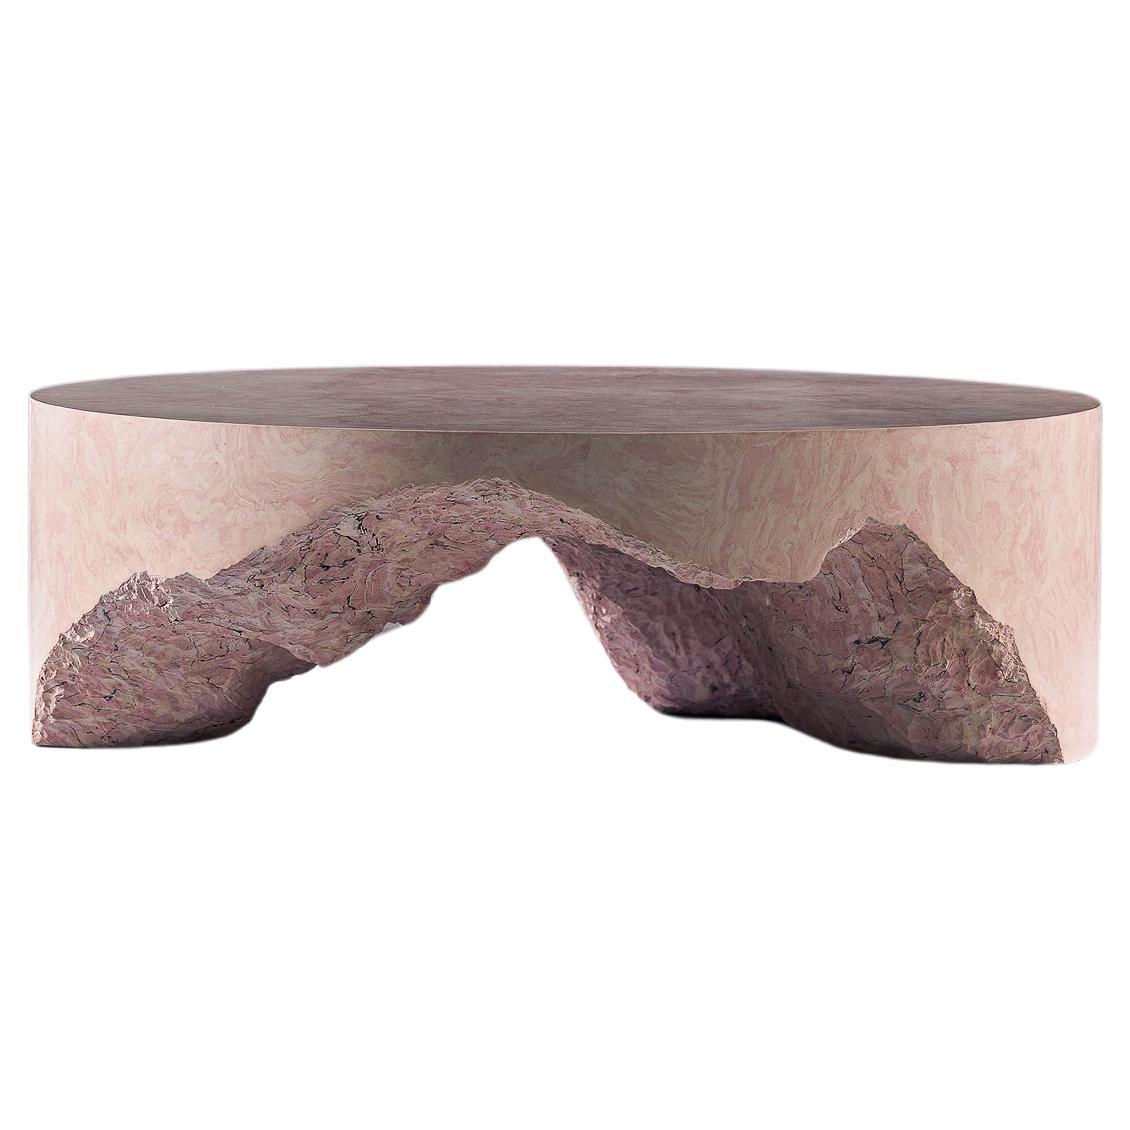 Unique Scagliola Round Coffee Table, SHY Design Studio. Scagliola, marble, pink.